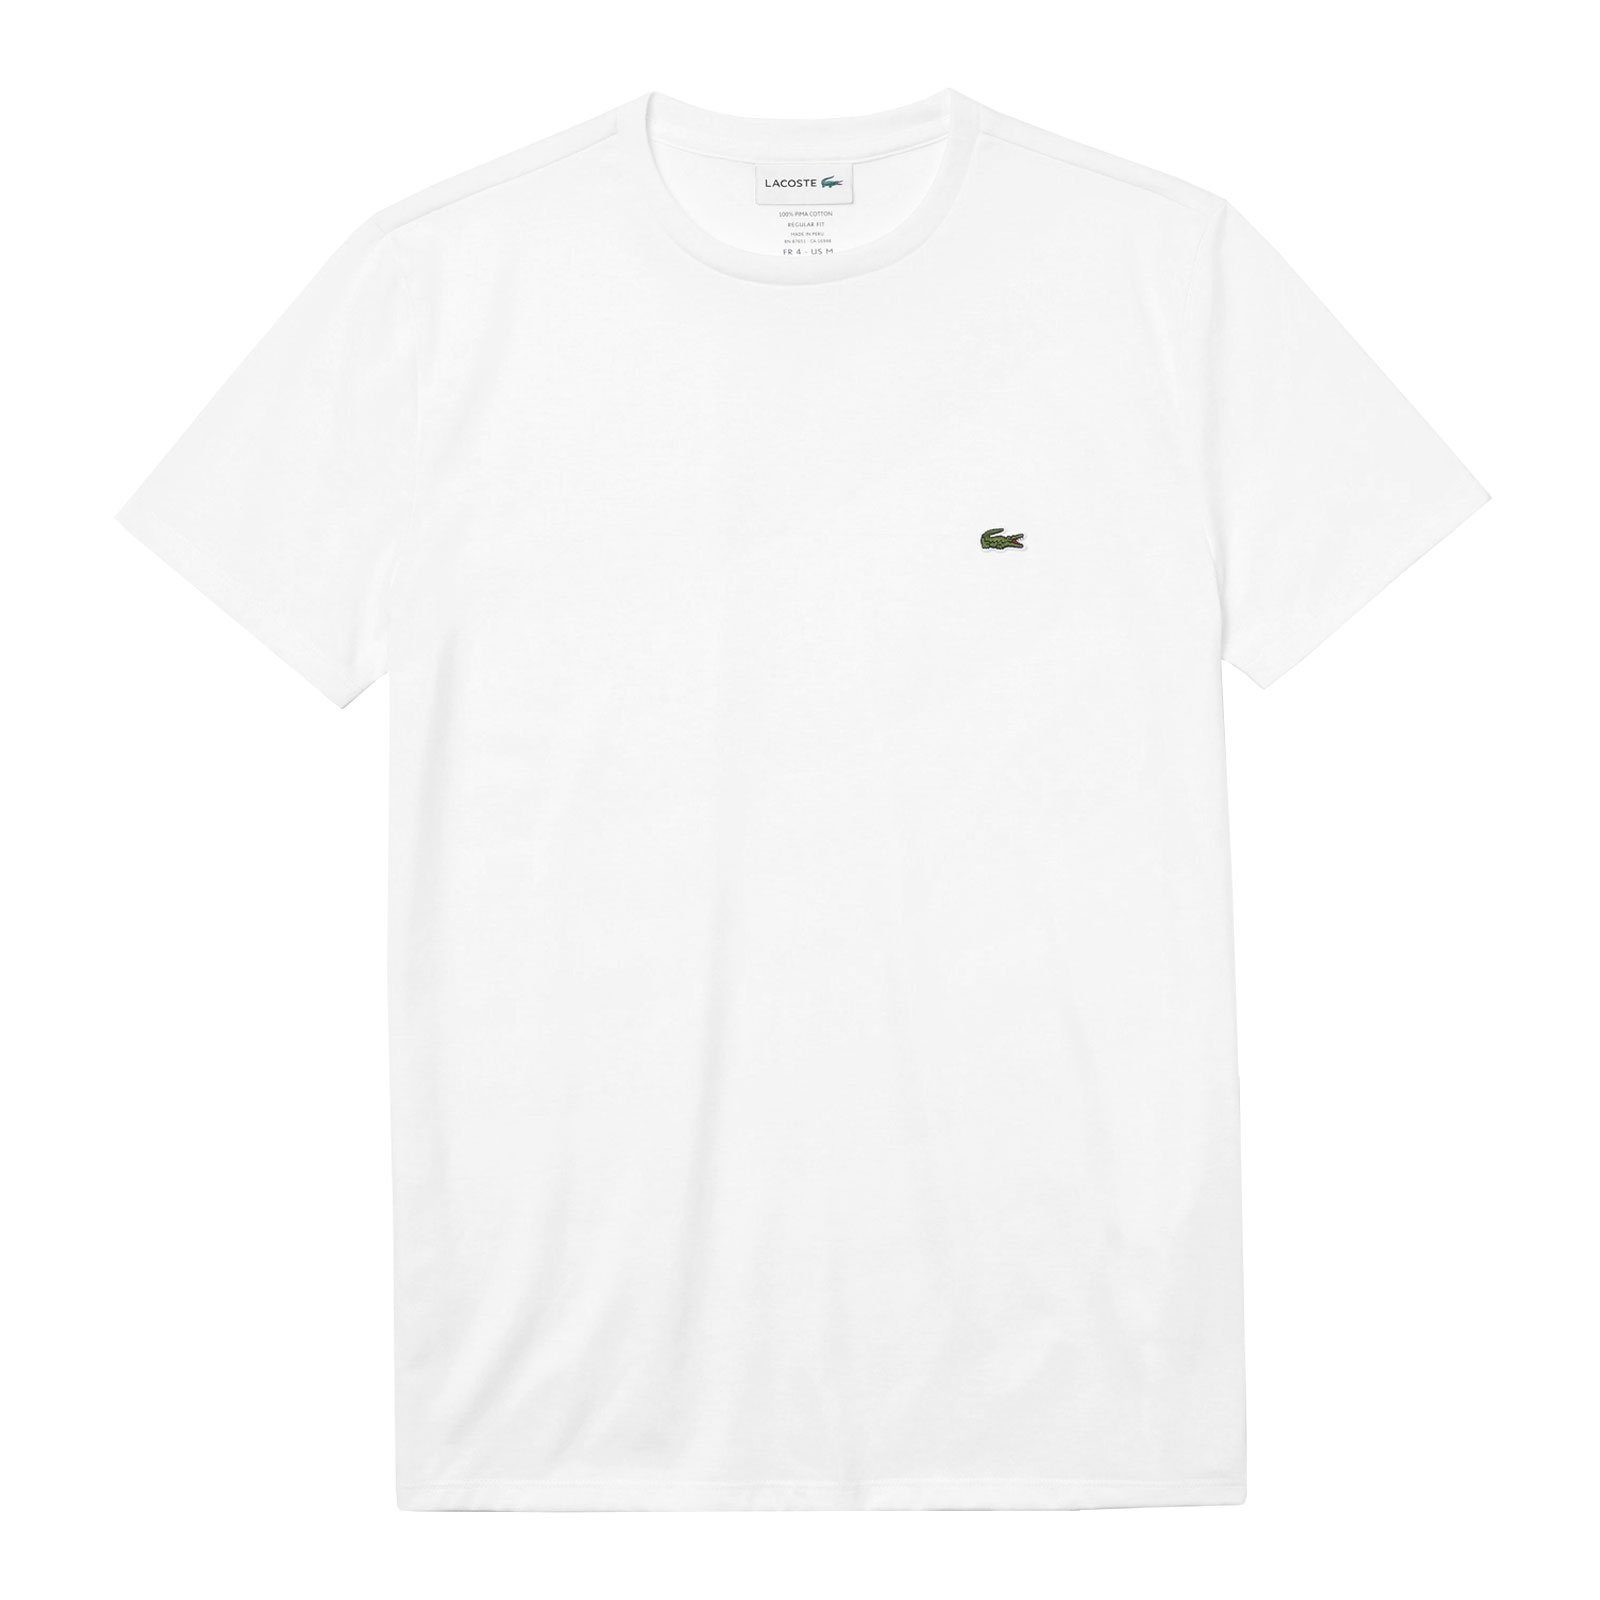 Brust white der T-Shirt mit Neck Cotton Lacoste kleinem auf Krokodil 001 Crew